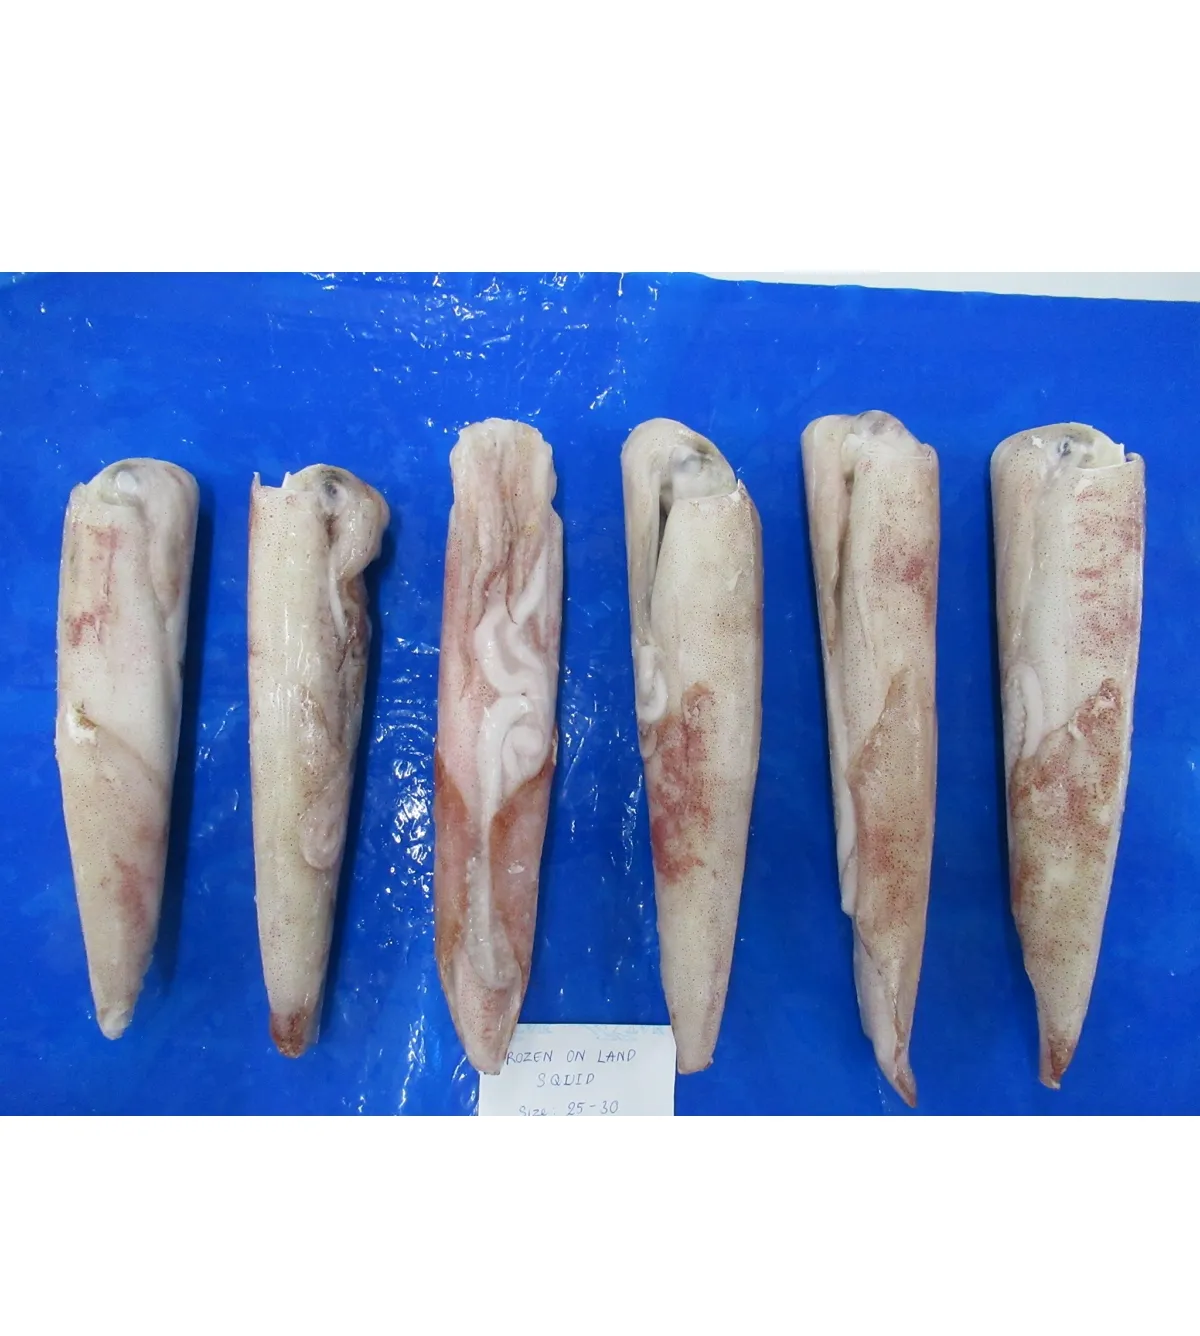 Vietnam seafood frozen squid wild caught loligo squid whole round